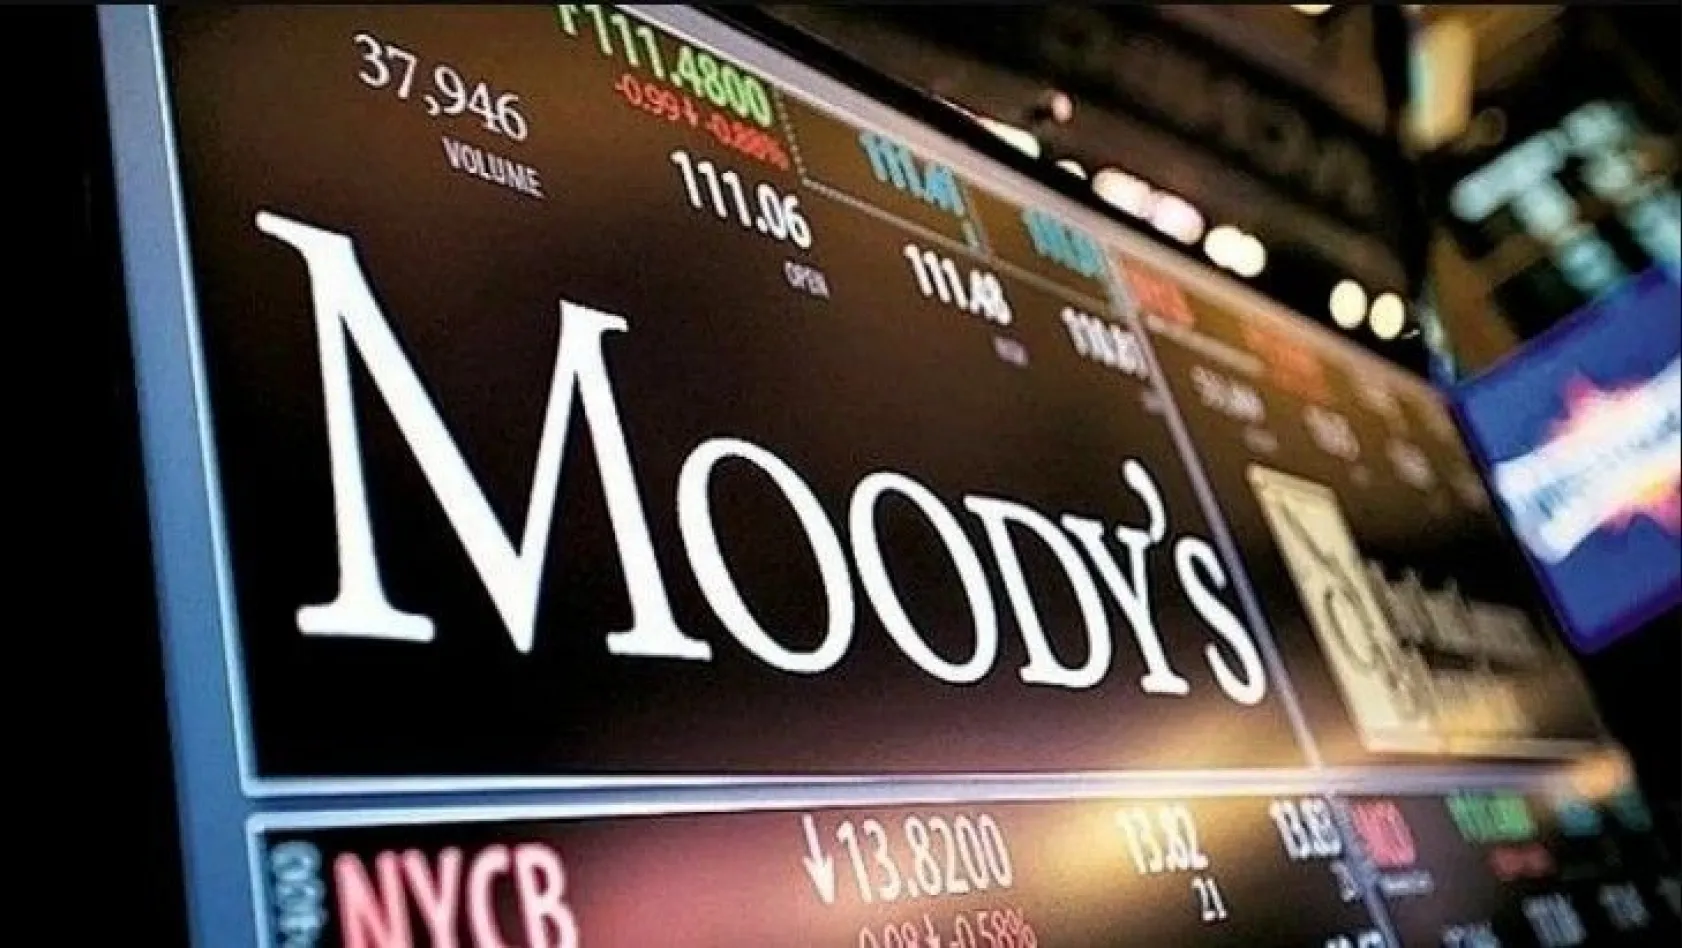 Moody's Türkiye'nin kredi notunu düşürdü!